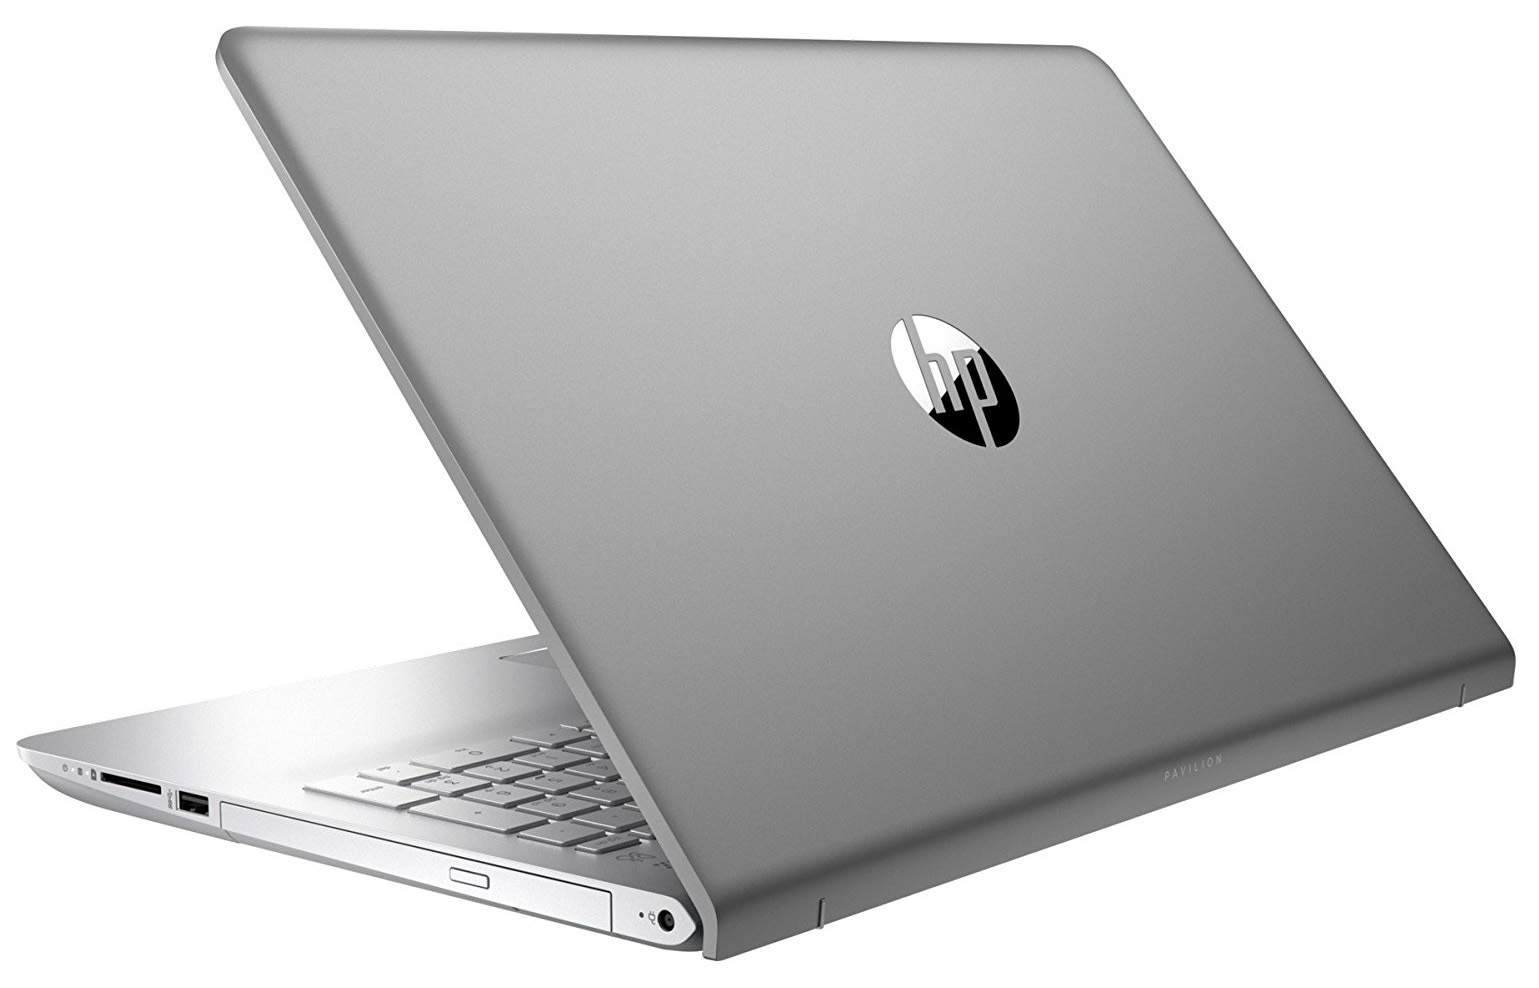 【超美品】HP Pavilion Laptop 15-cc0xx Core i5